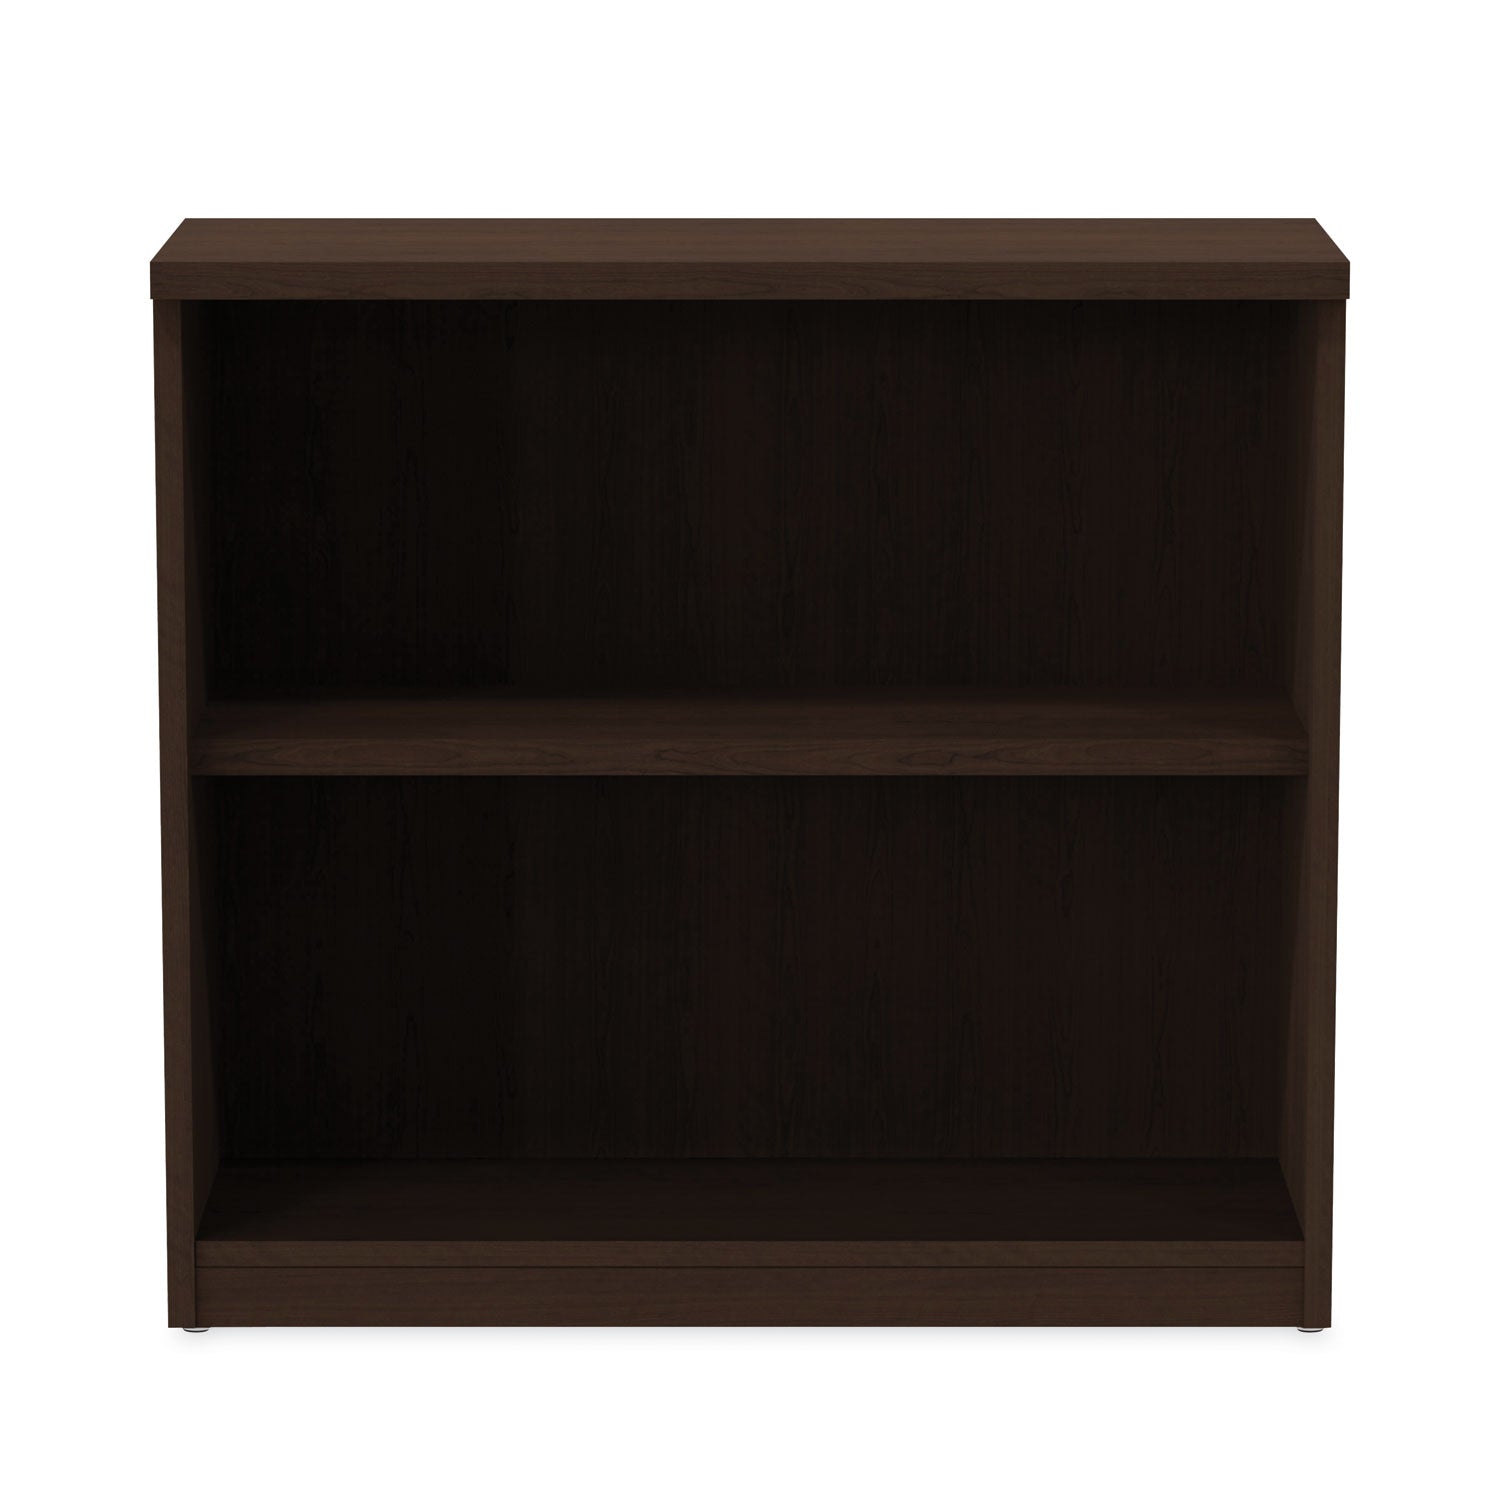 alera-valencia-series-bookcase-two-shelf-3175w-x-14d-x-295h-espresso_aleva633032es - 7